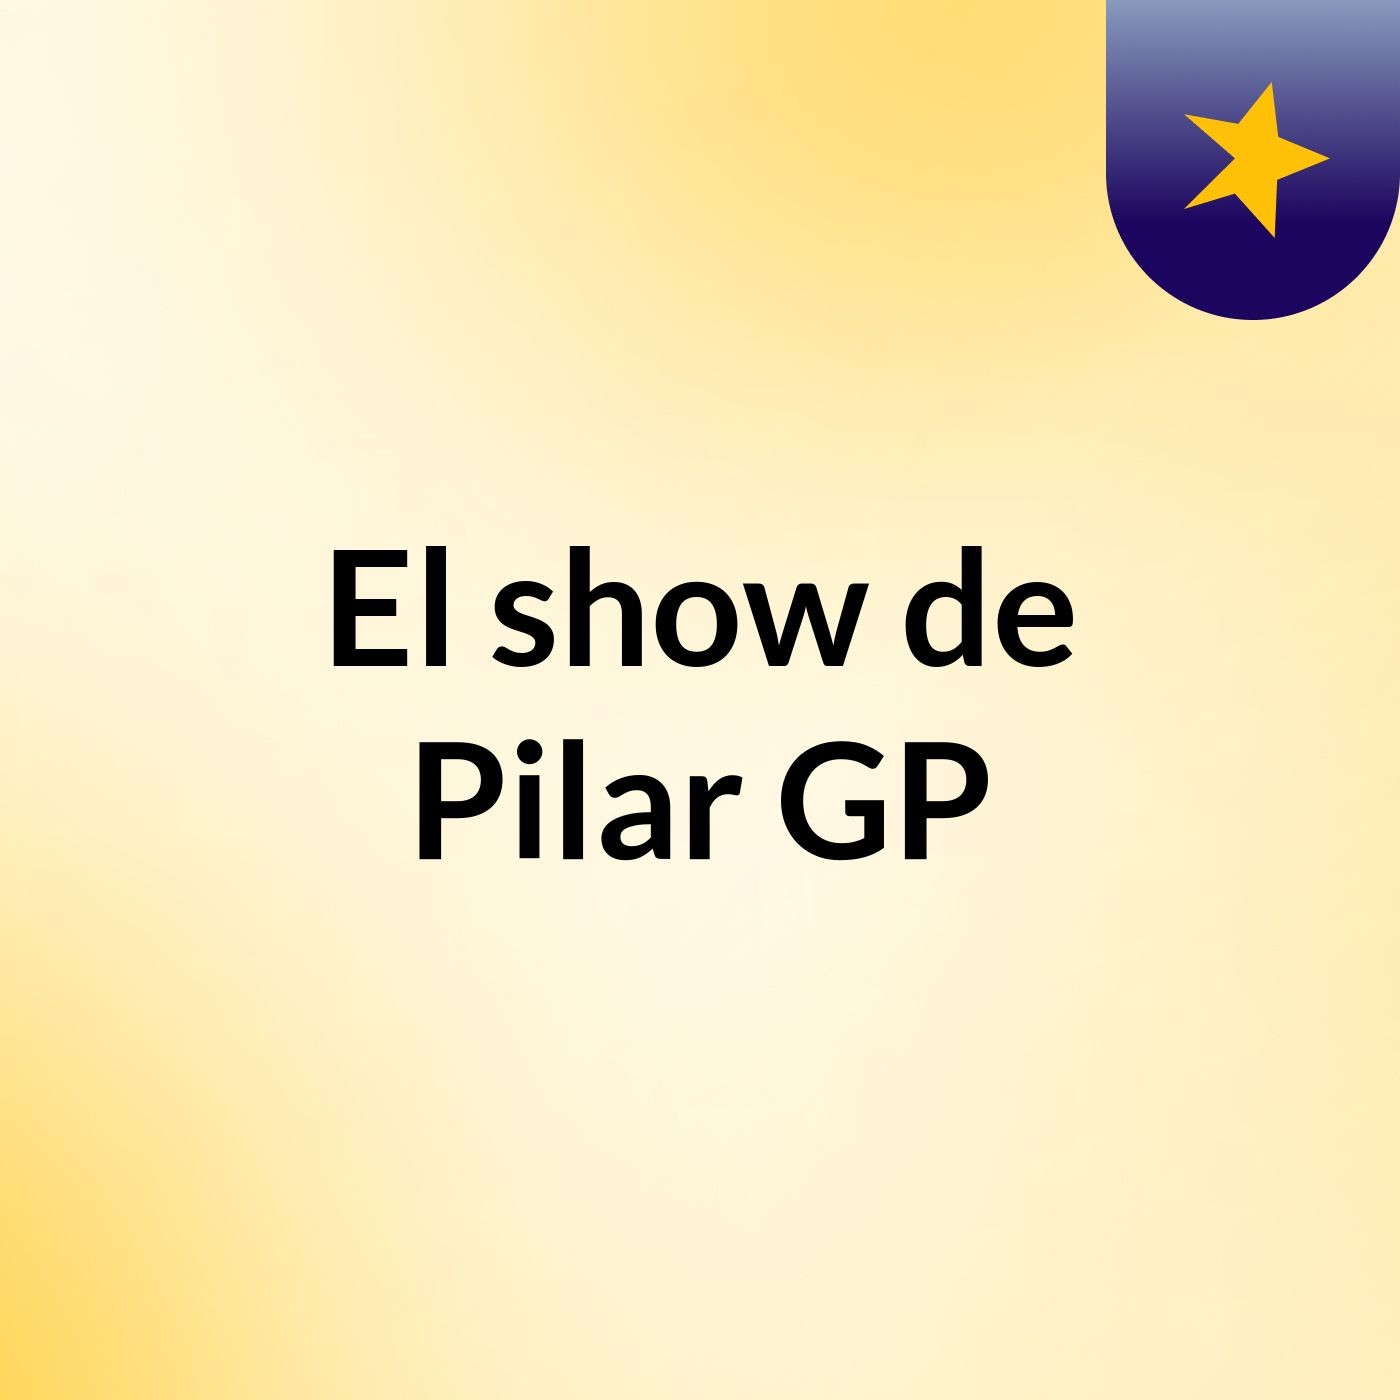 El show de Pilar GP